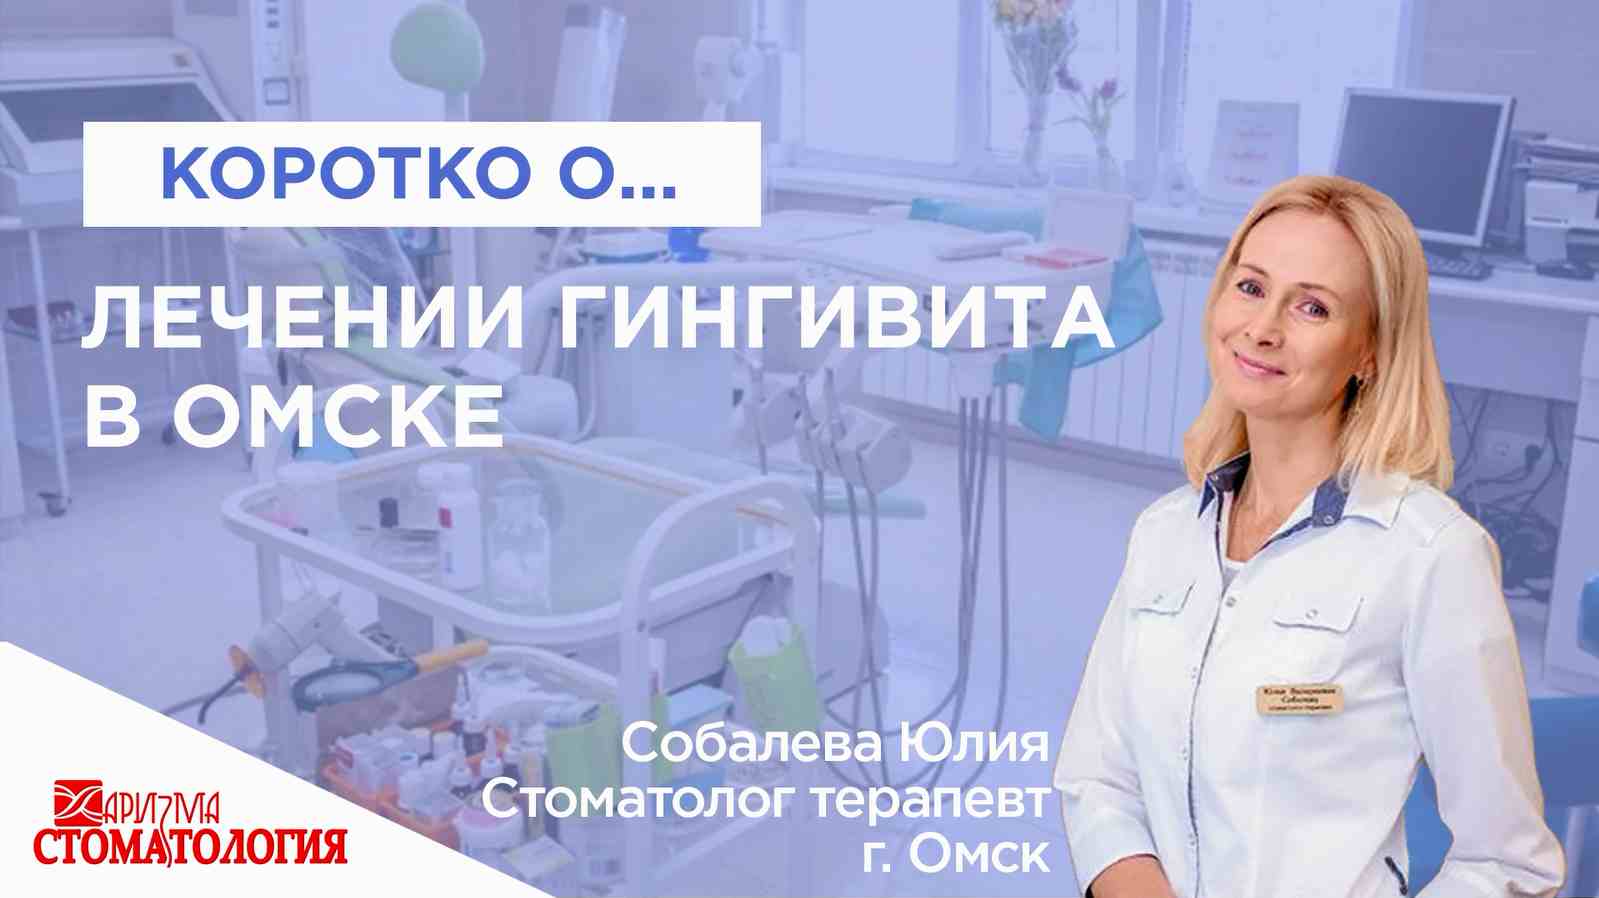 Лечение гингивита в Омске по доступной цене в Омске в клинике Харизма недорого 